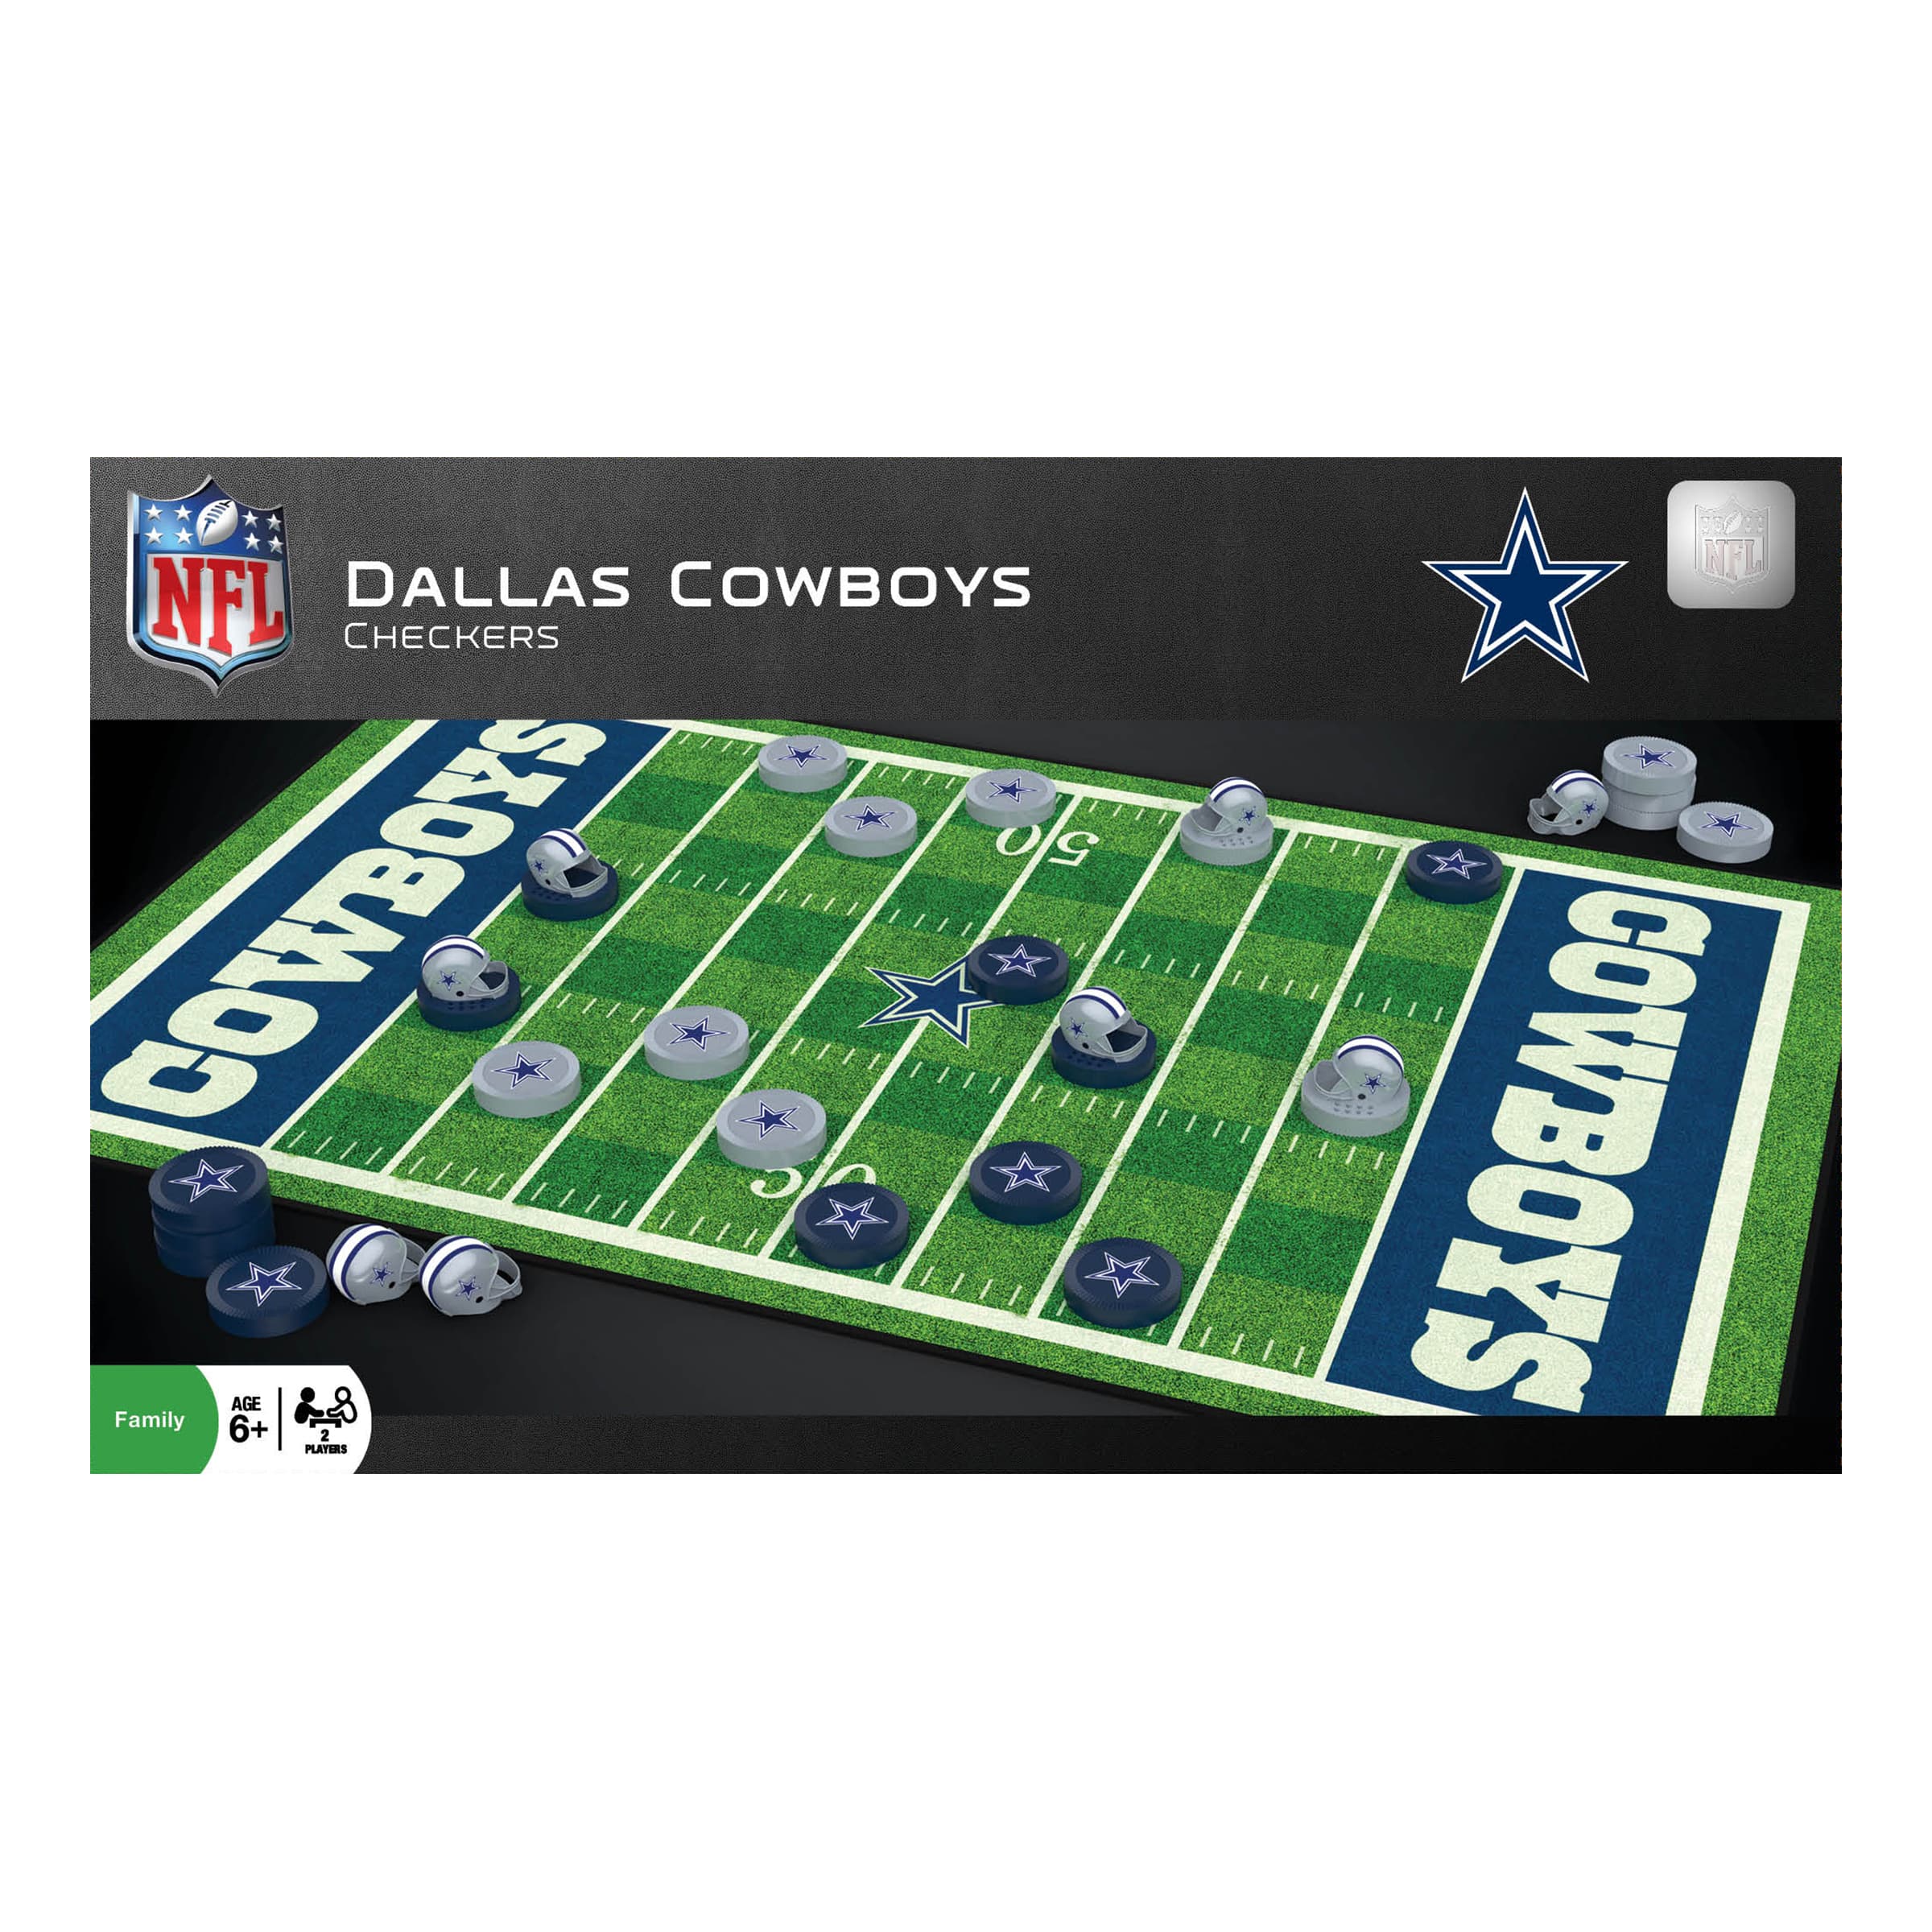 NFL Checkers Dallas Cowboys